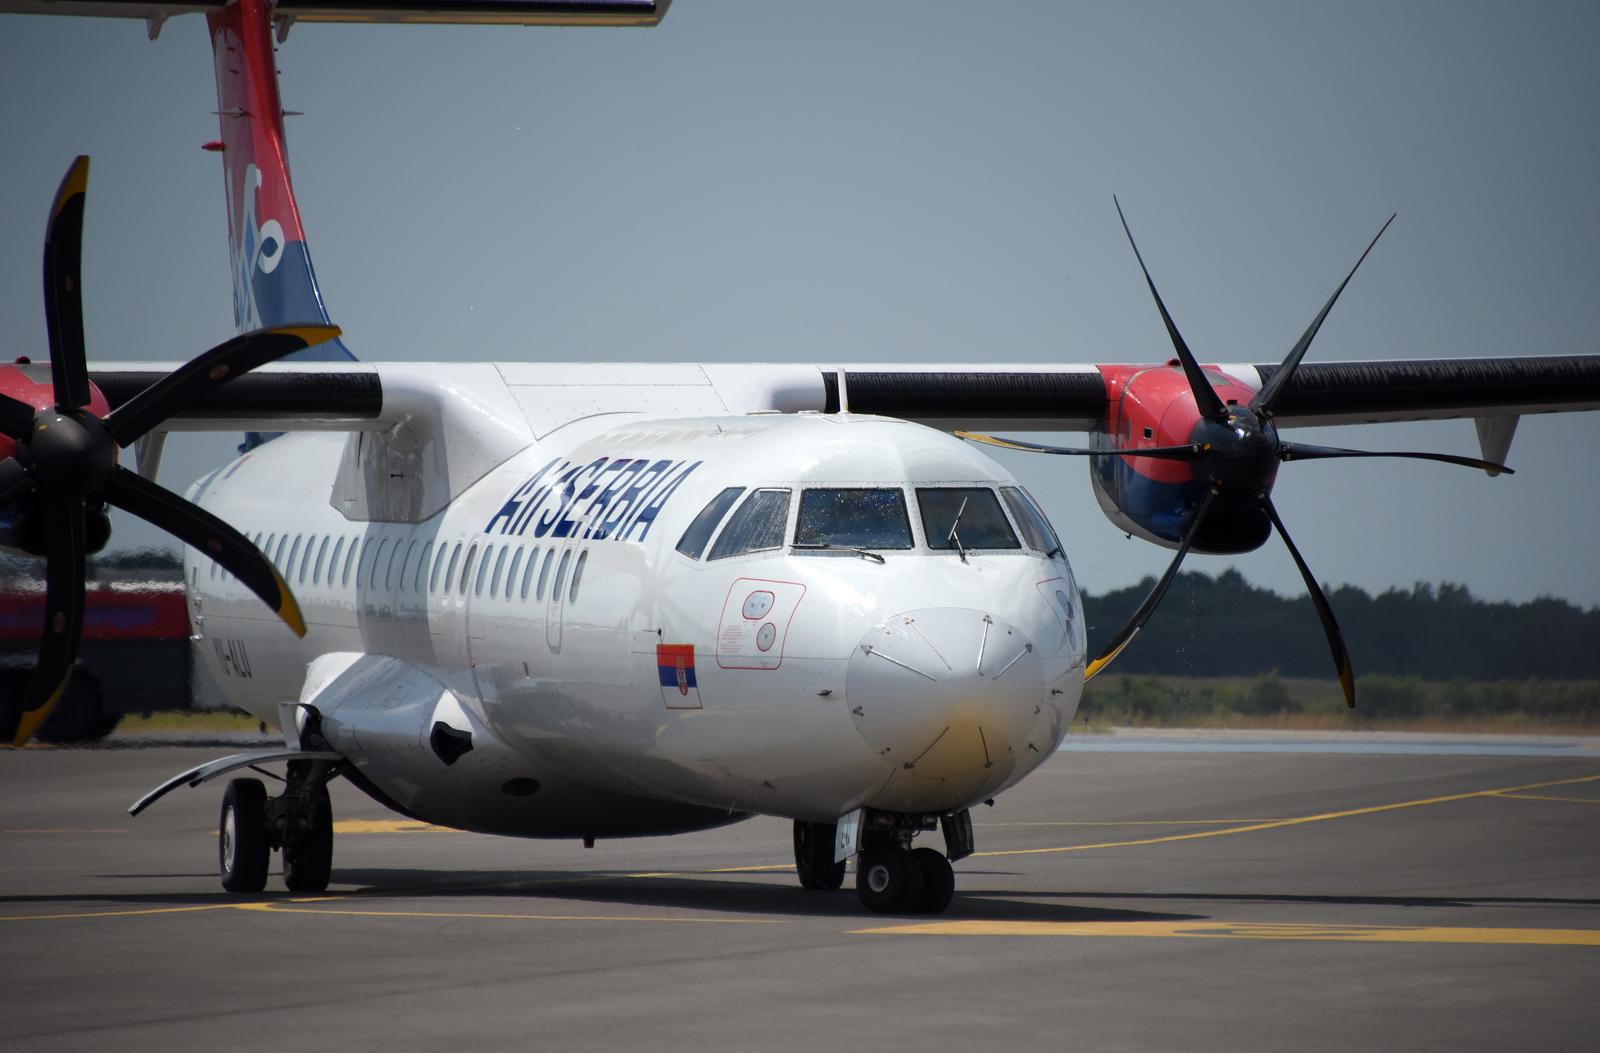 11.07.2021., Pula - Zracna luka Pula biljezi porast putnika u odnosu na 2020. godinu. Tako je po prvi puta ove godine, sa 54 putnika, sletjela i avio kompanija Air Serbia. Na liniji Beograd - Pula prometovati ce zrakoplov ATR 72, kapaciteta 66 sjedista, i to dva puta tjedno, cetvrtkom i nedjeljom. Linija ce biti aktivna od 11. srpnja do 12. rujna 2021. godine. Photo: Sasa Miljevic/PIXSELL